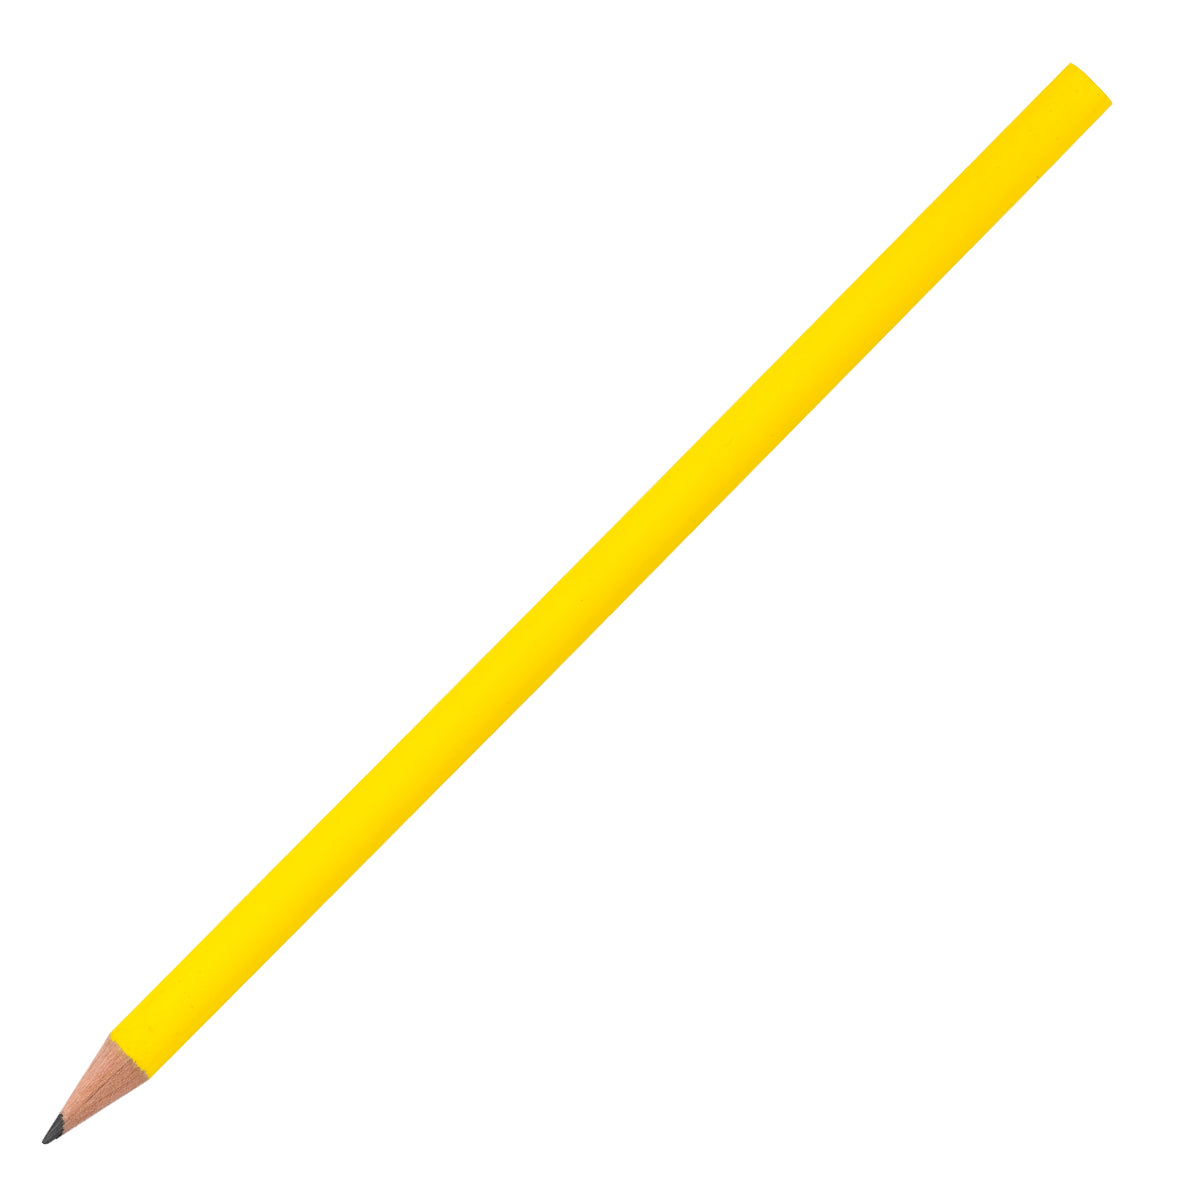 Bleistift gespitzt ohne Radierer